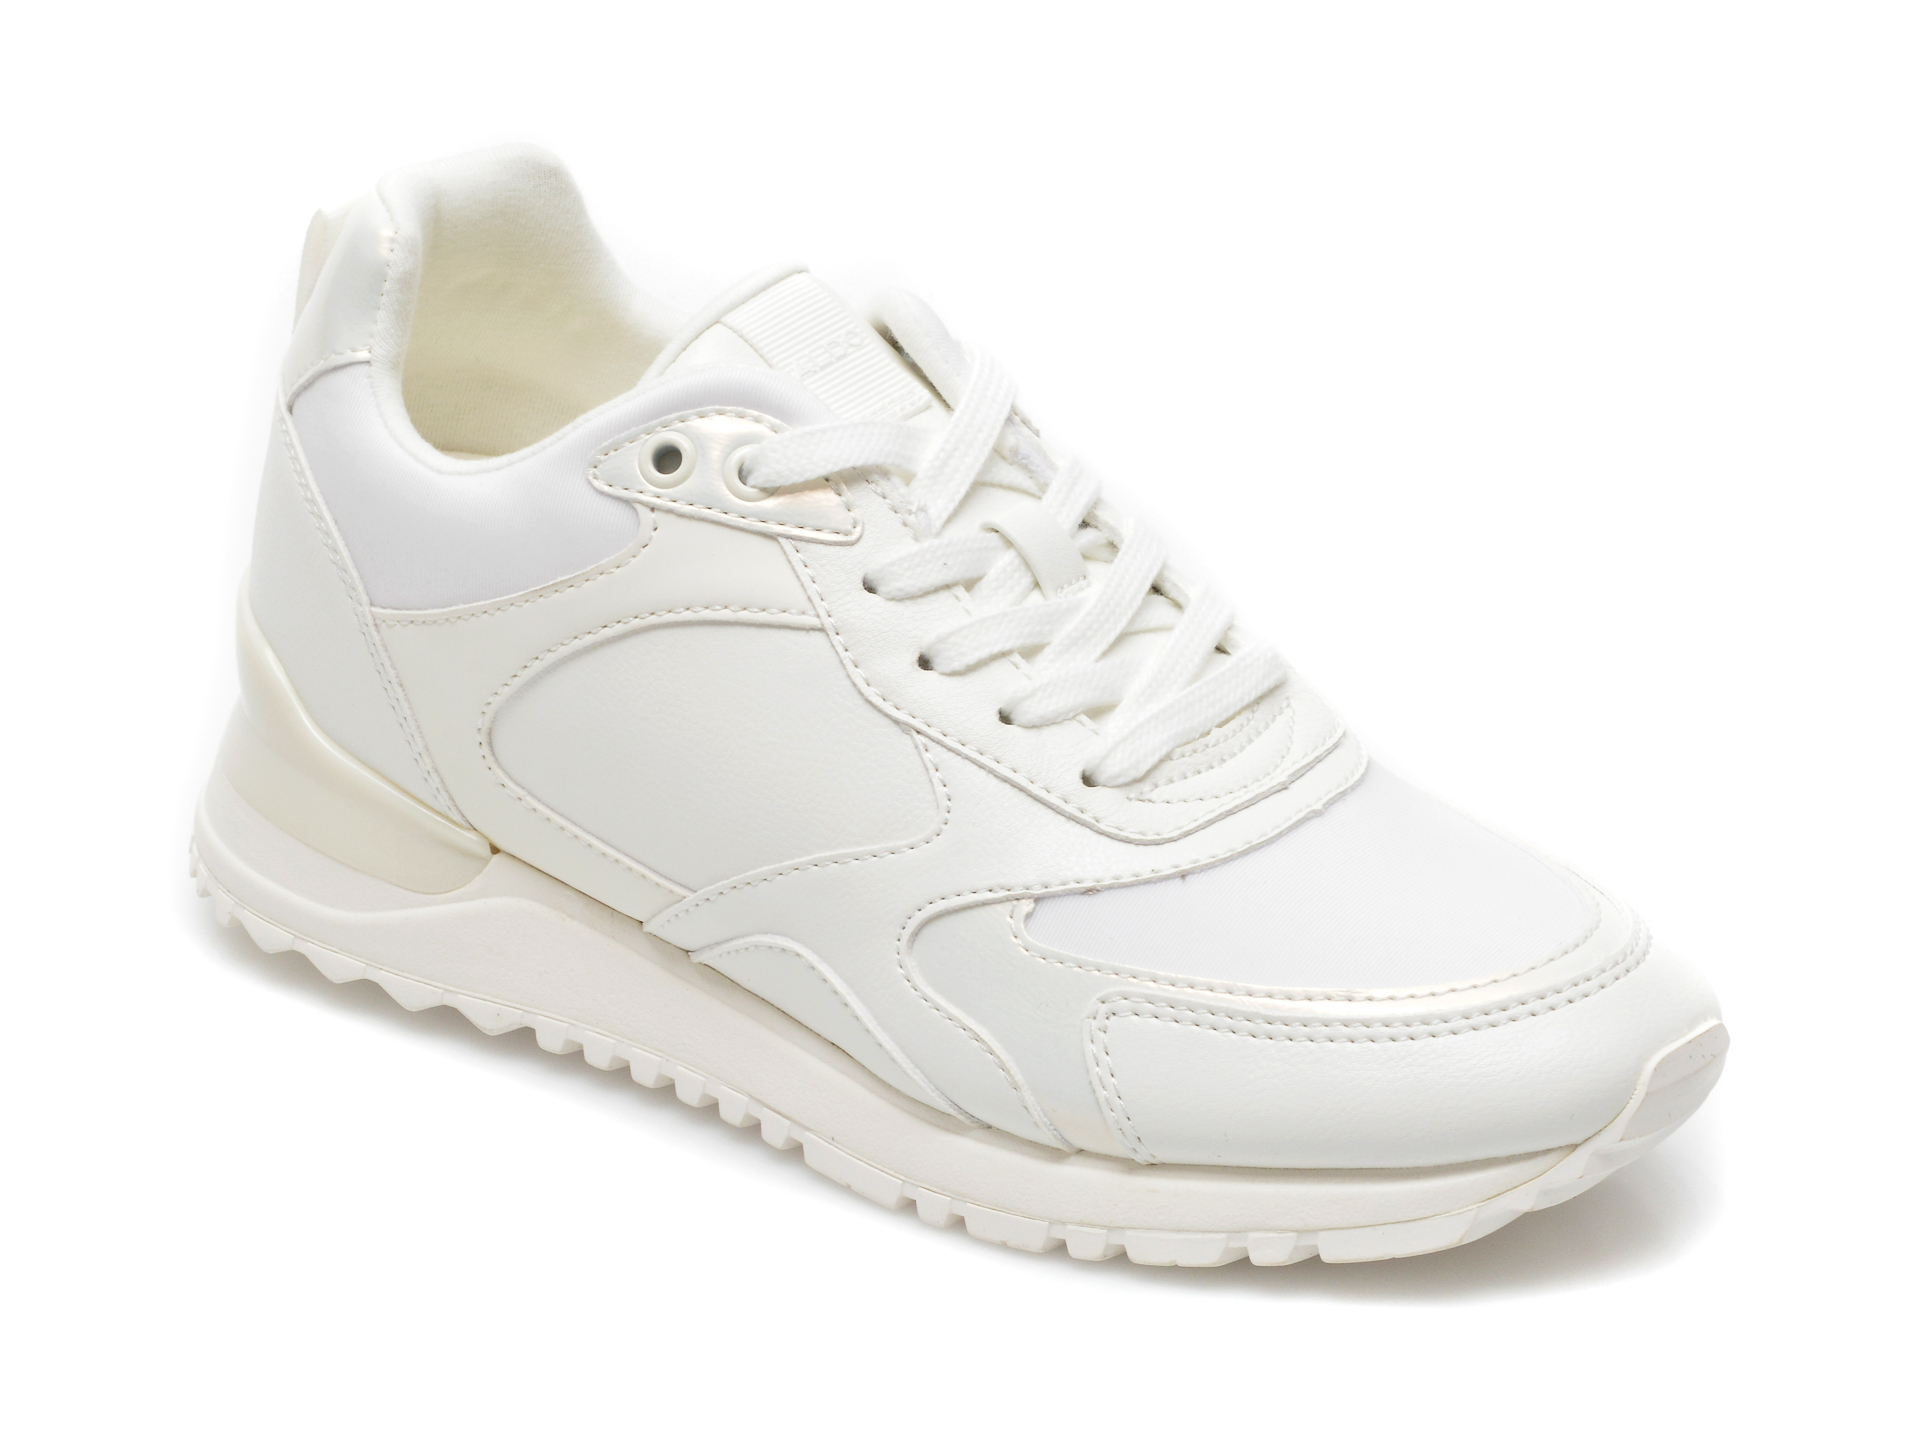 Pantofi sport ALDO albi, 13240903, din material textil si piele ecologica Aldo